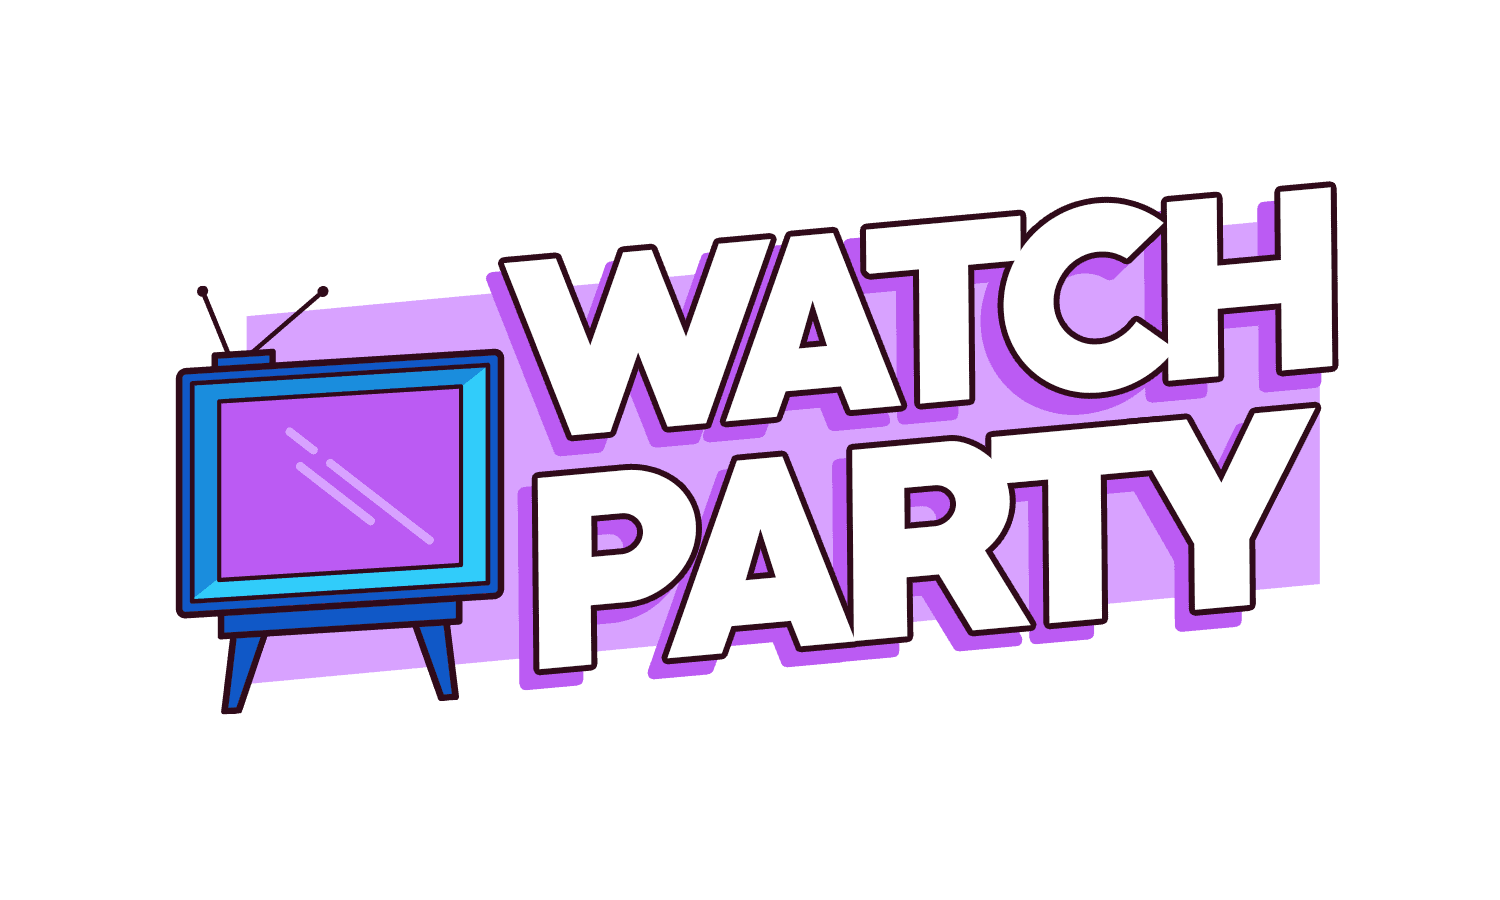 Watch Parties